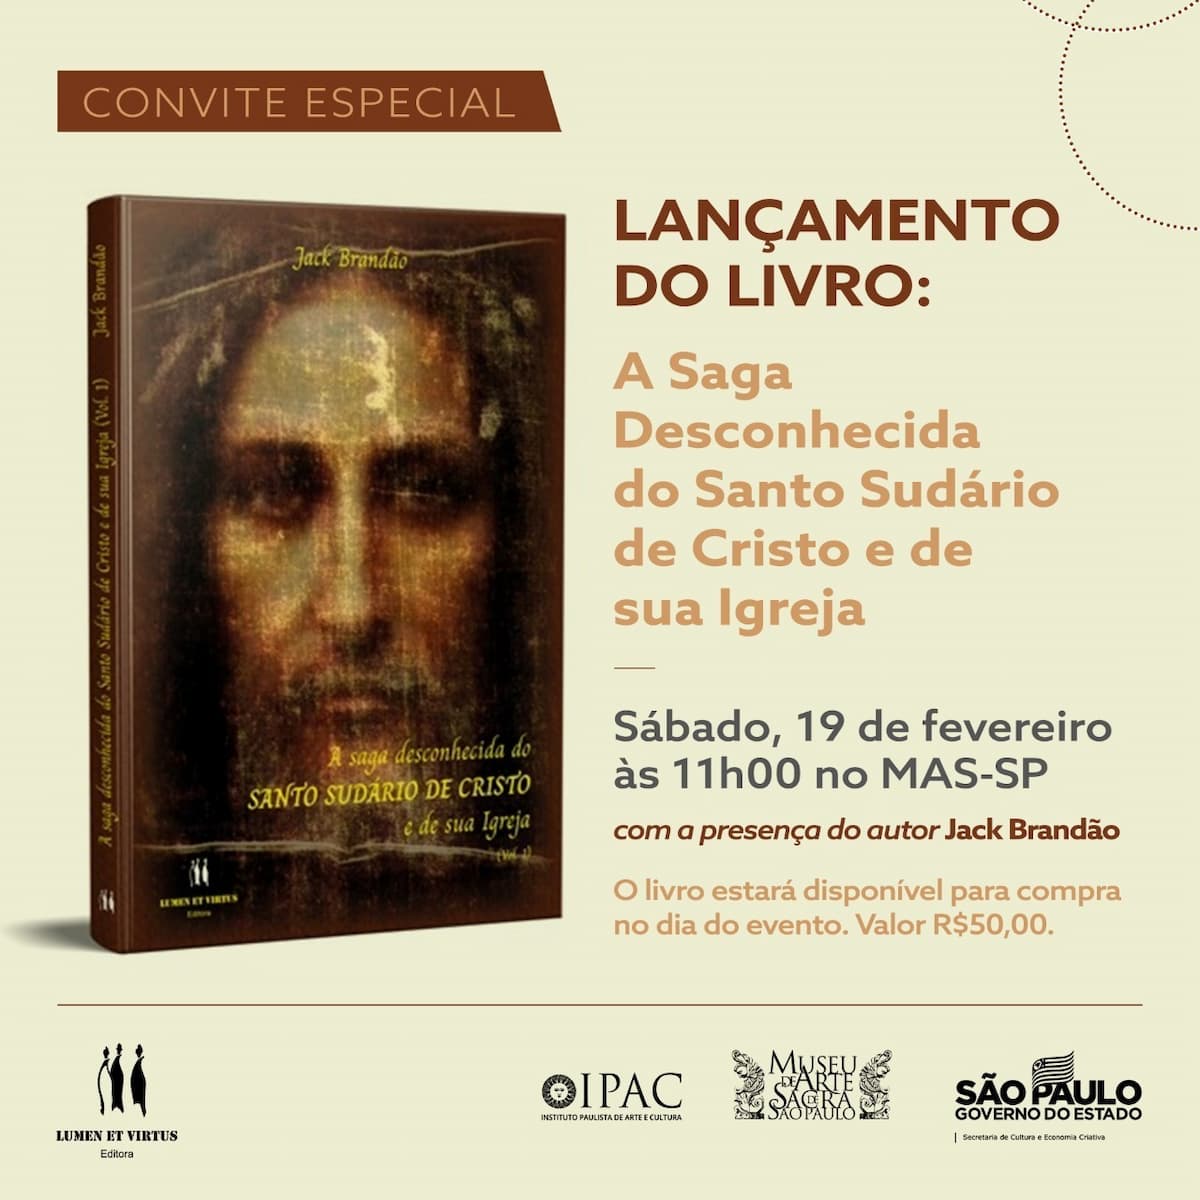 Livro "A saga desconhecida do SUDÁRIO DE CRISTO e de sua Igreja", ブック - カバー, 招待状. ディスクロージャー.